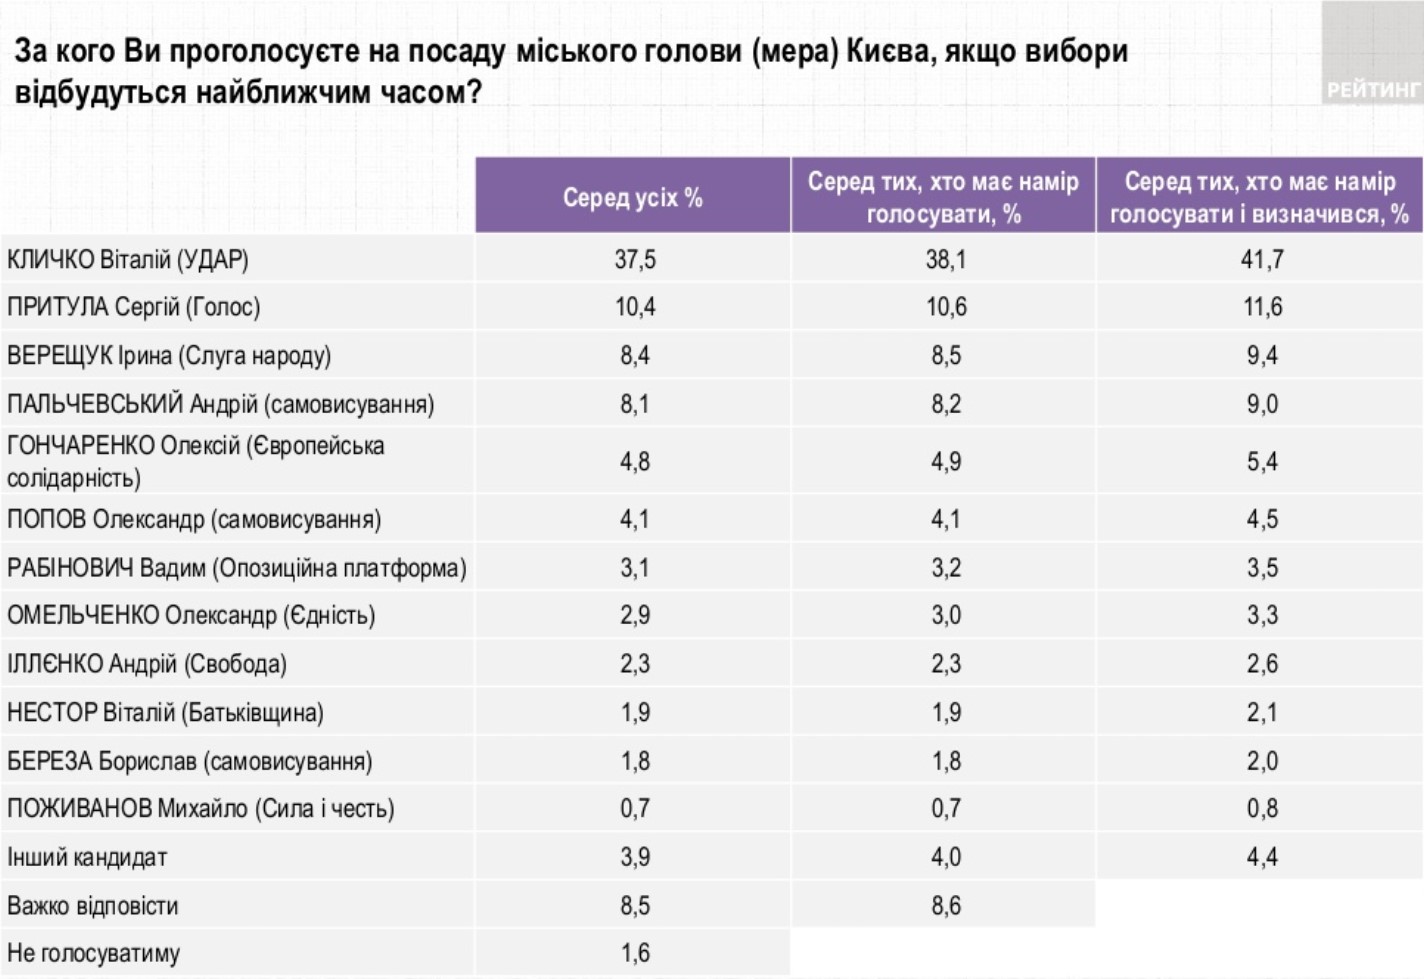 Выборы мэра в Киеве. Кличко лидирует, Притула на втором месте - опрос Рейтинга